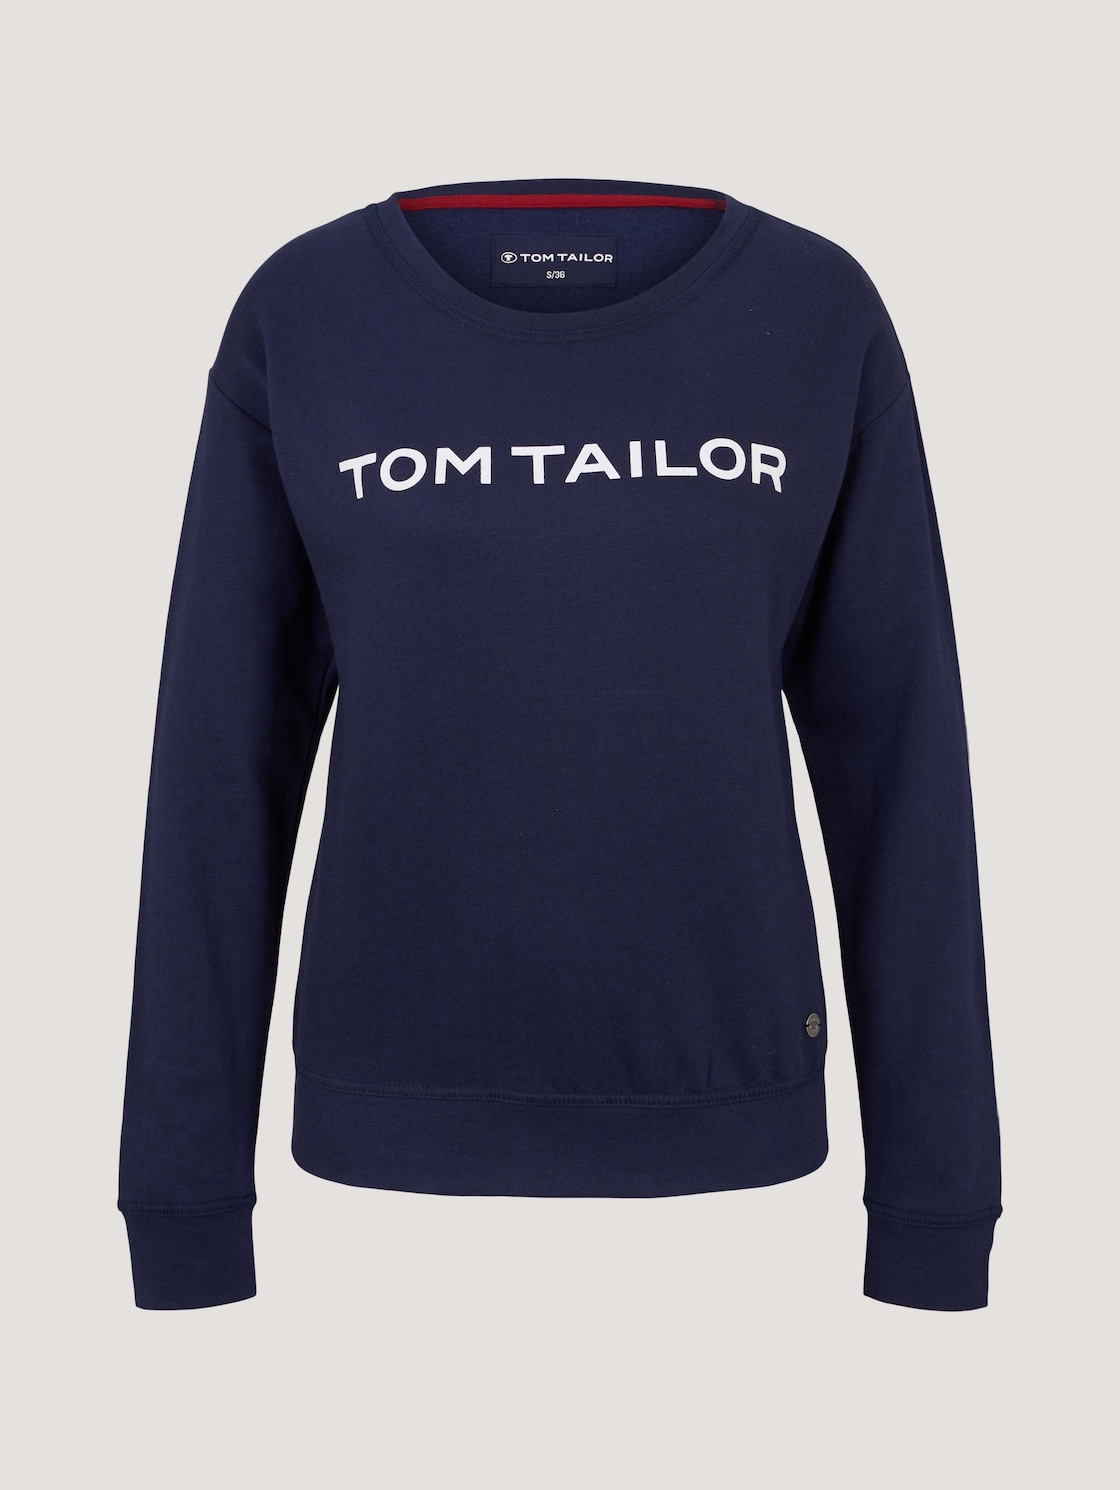 TOM TAILOR Damen Loungewear Sweatshirt, blau, Print, Gr. 36 von Tom Tailor